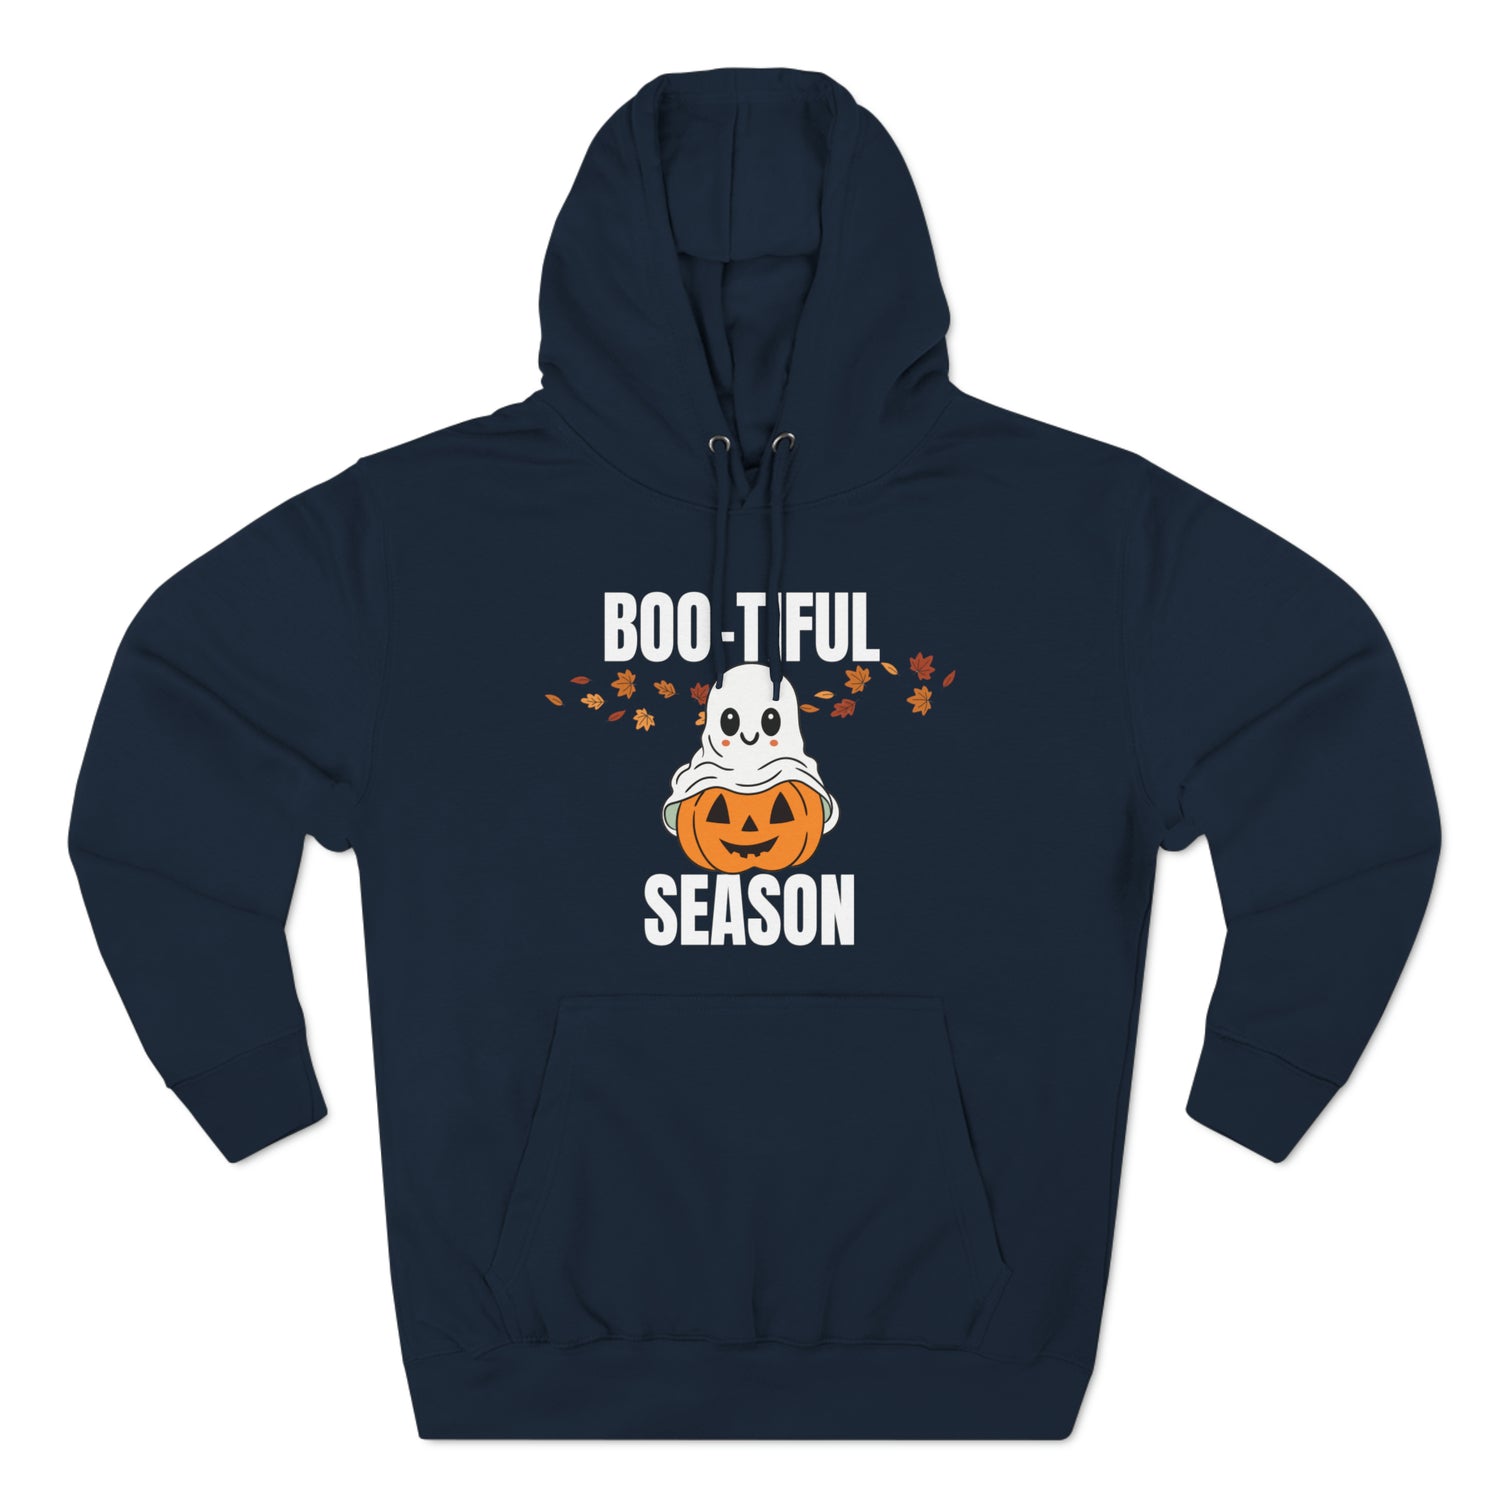 Navy Hoodie Hoodie Halloween Sweatshirt for Spooky Hoodies Outfits this Fall Petrova Designs